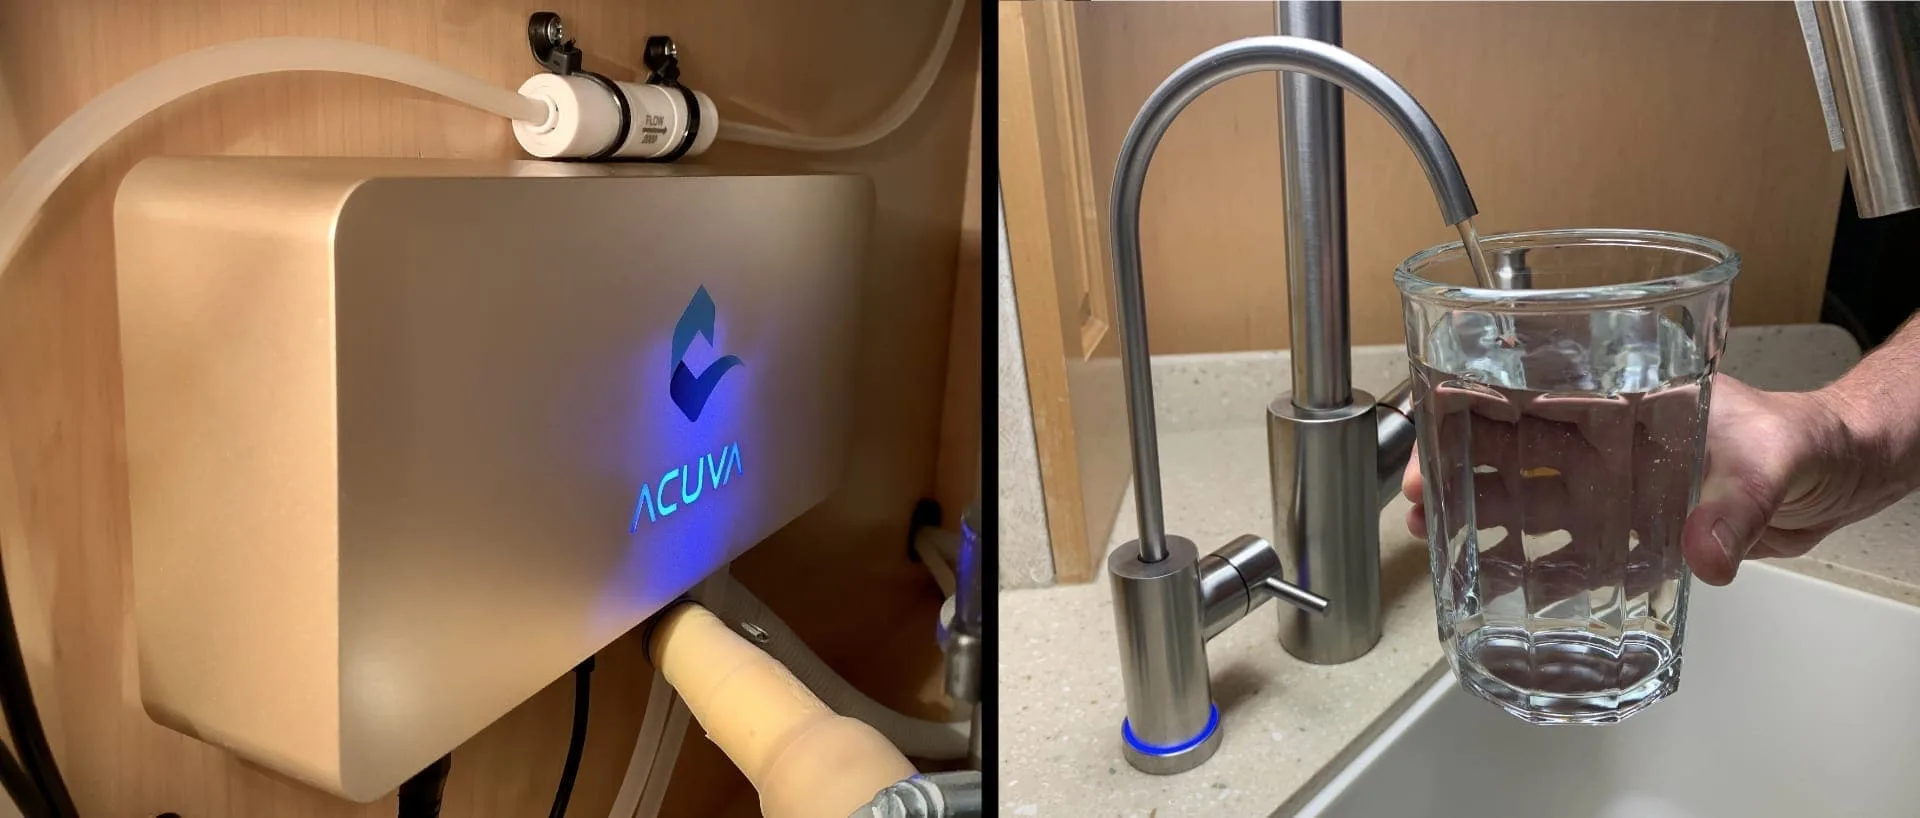 Acuva Arrow Max 2.0 UV-LED Water Purification System